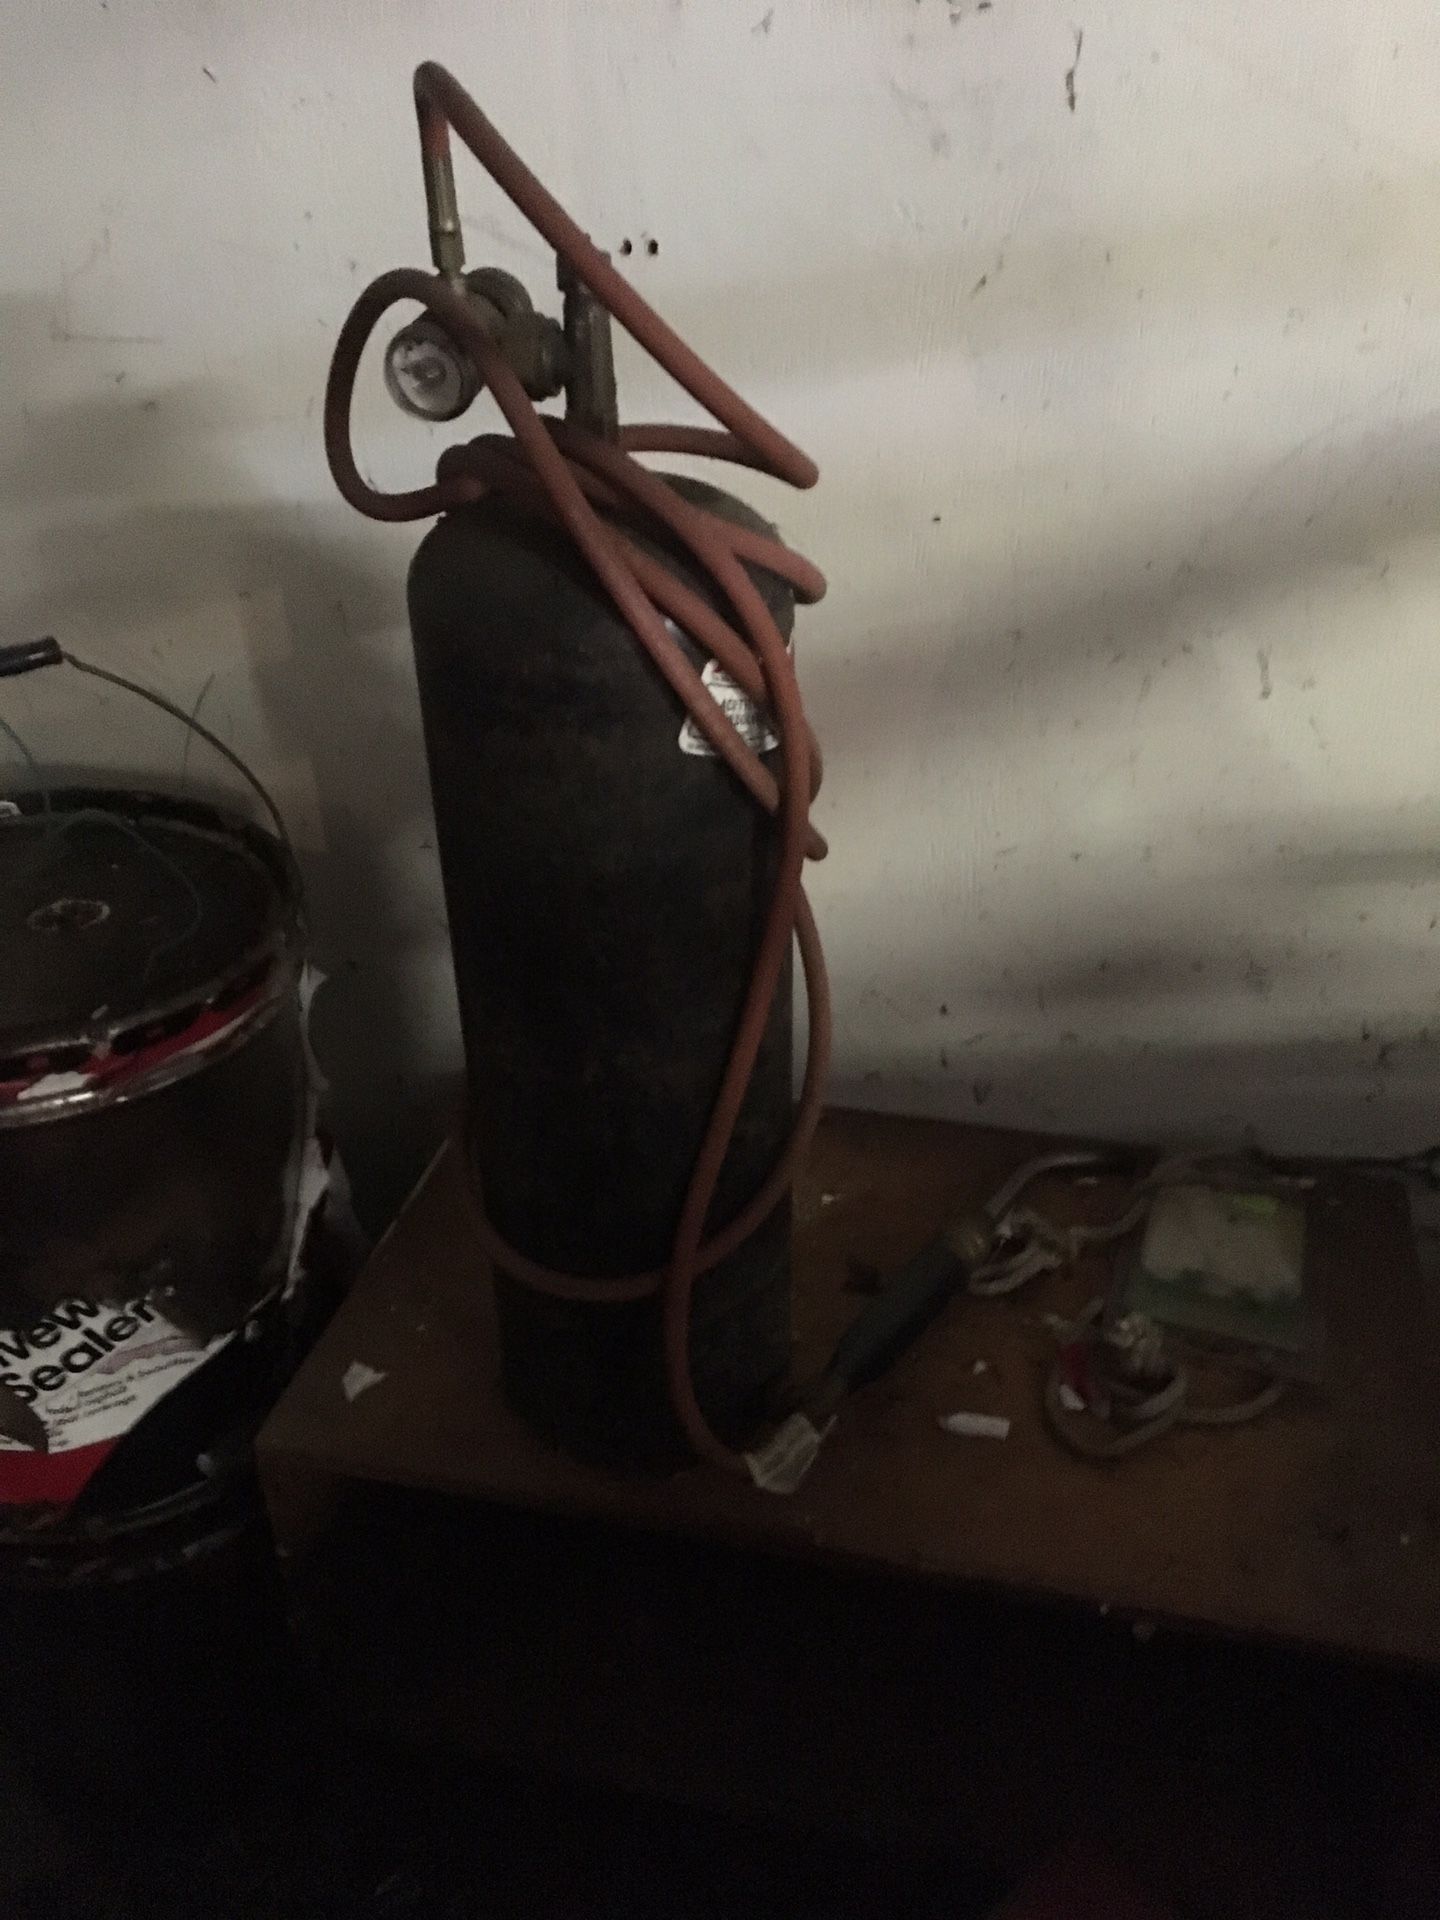 B bottle 1/2 full + regulator and torch